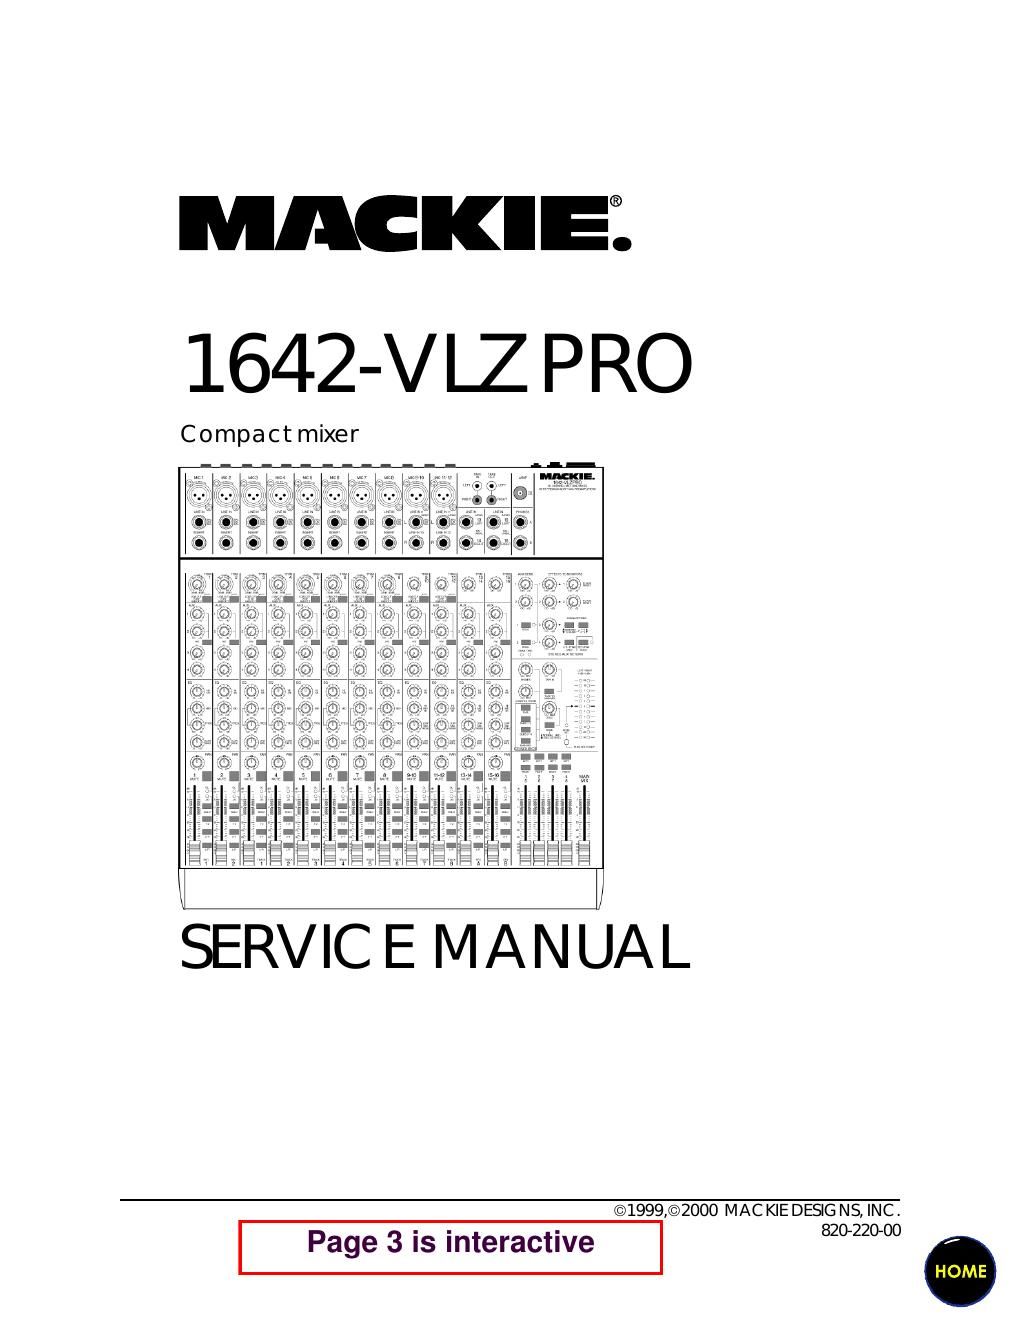 Mackie 1642 VLZ Pro Service Manual